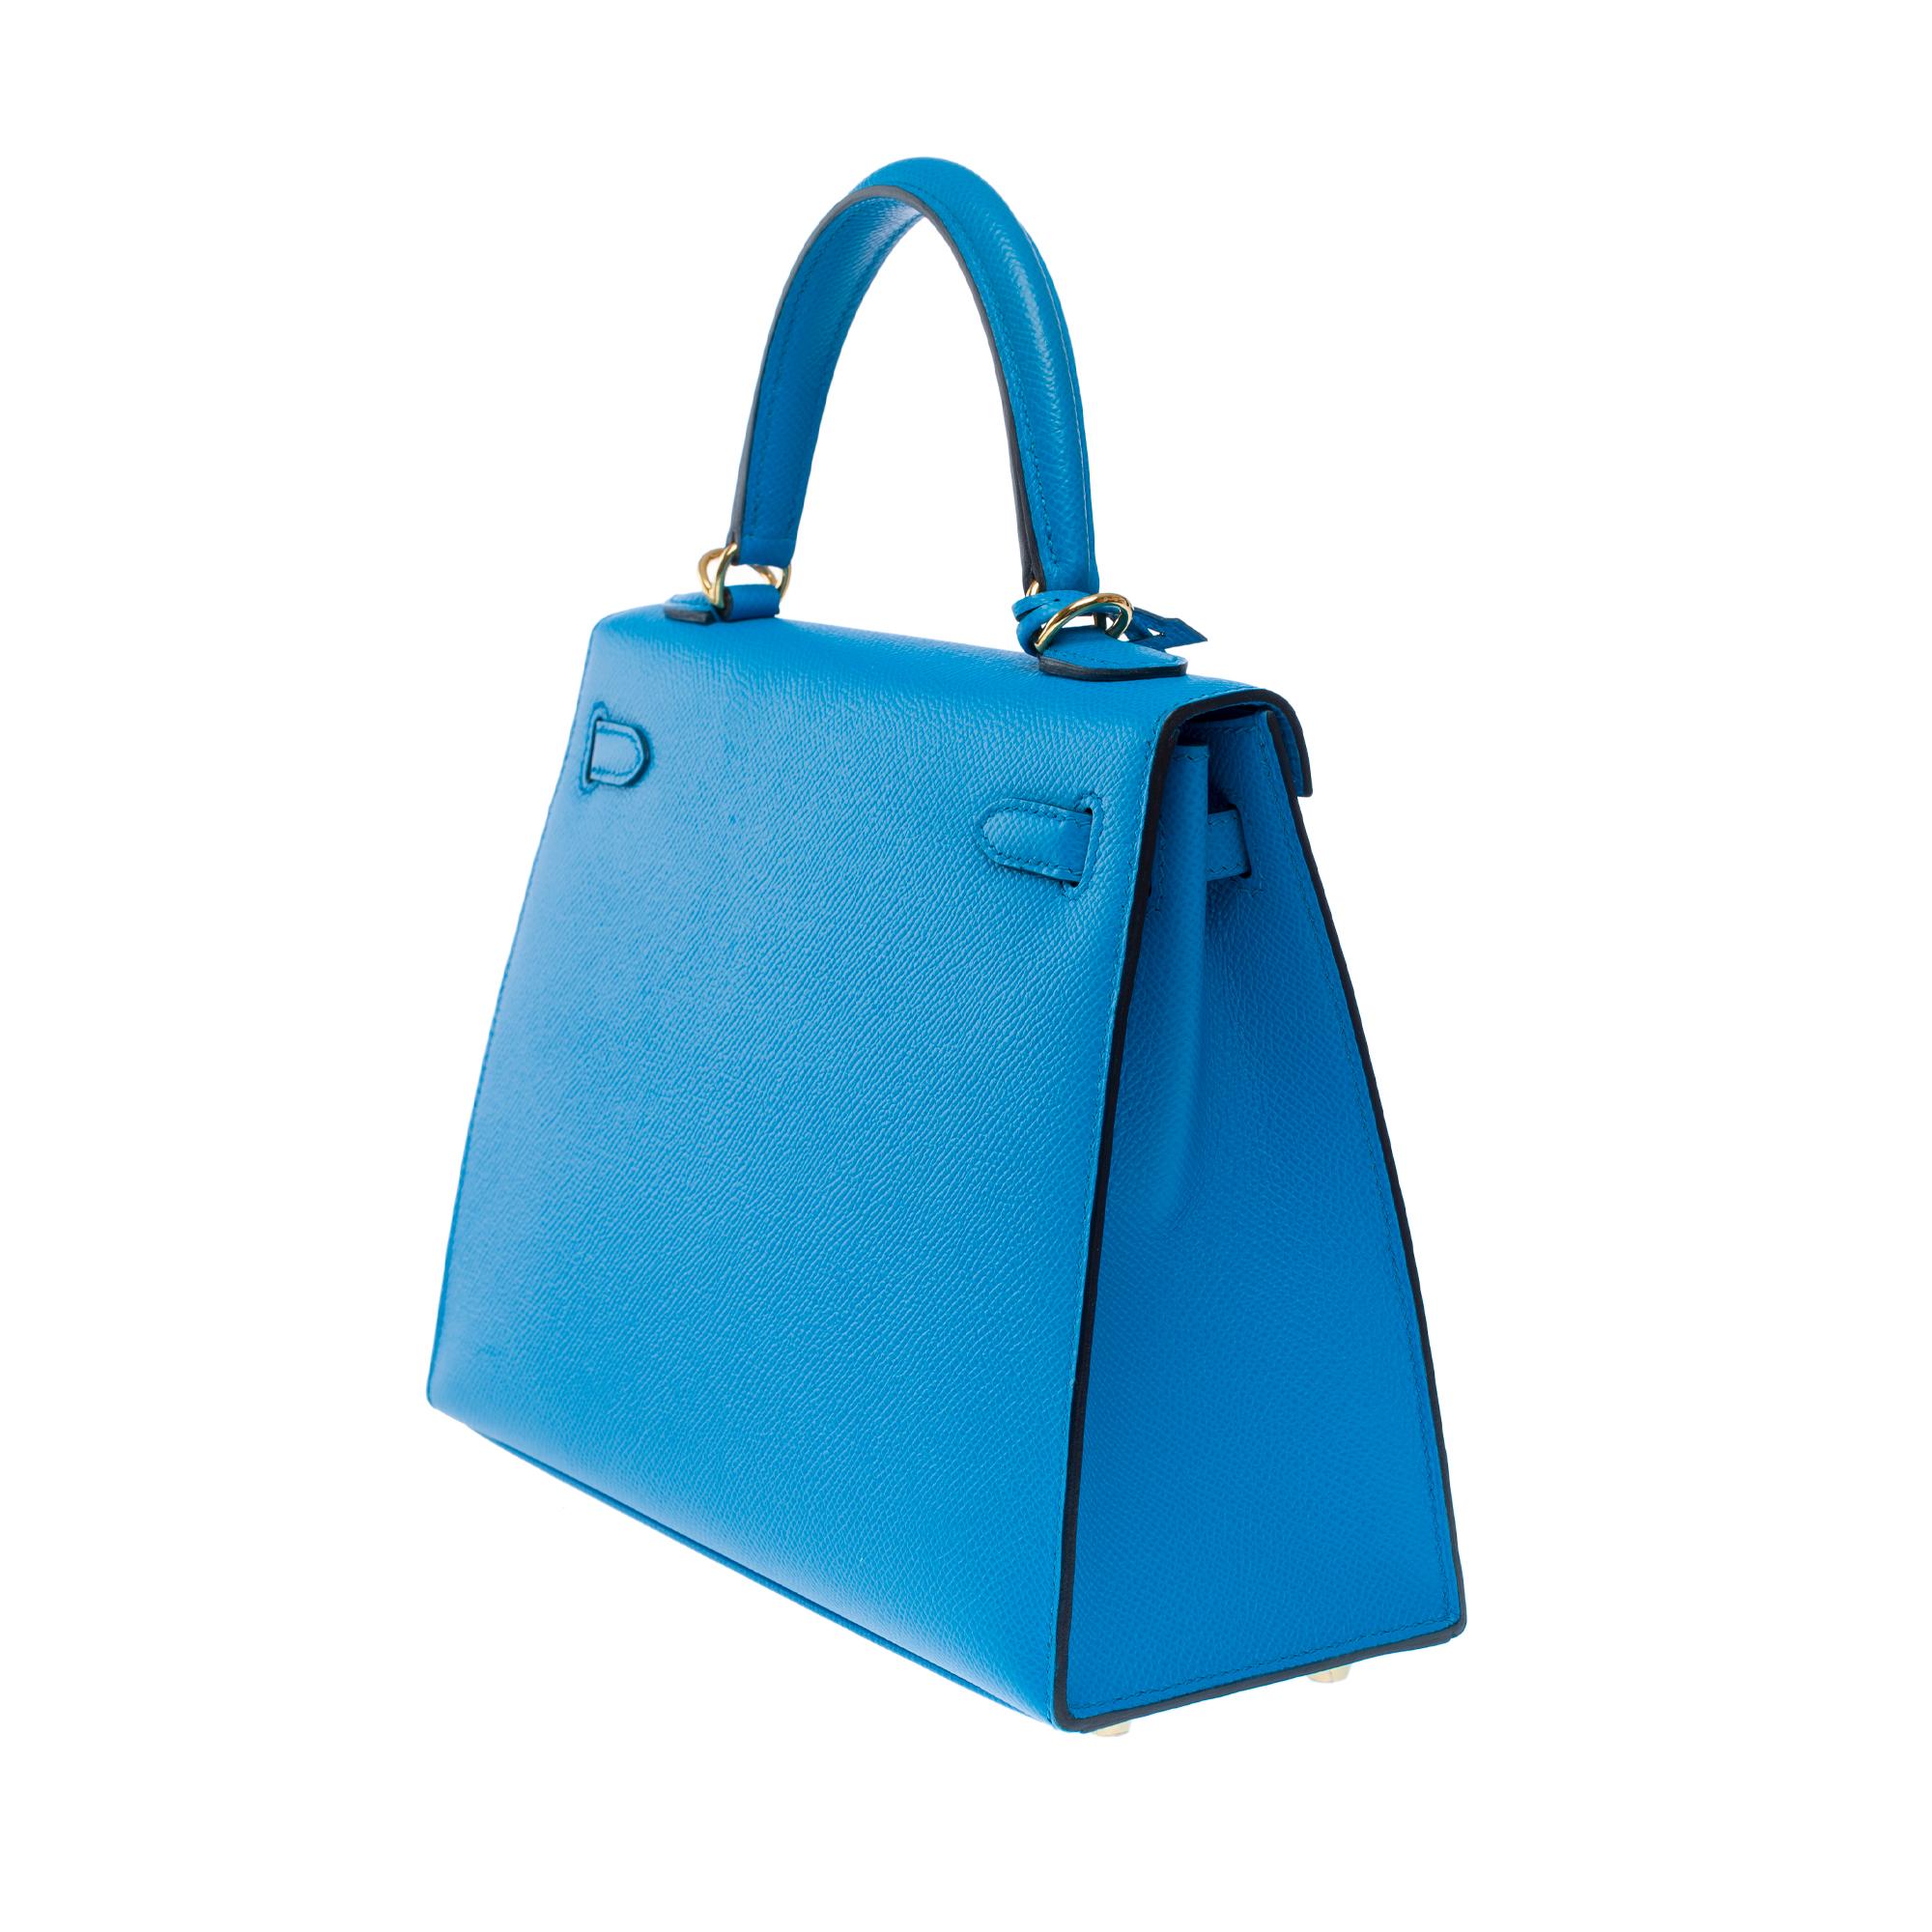 Amazing Hermès Kelly 25 handbag strap in Blue Frida Epsom calf leather, GHW For Sale 2